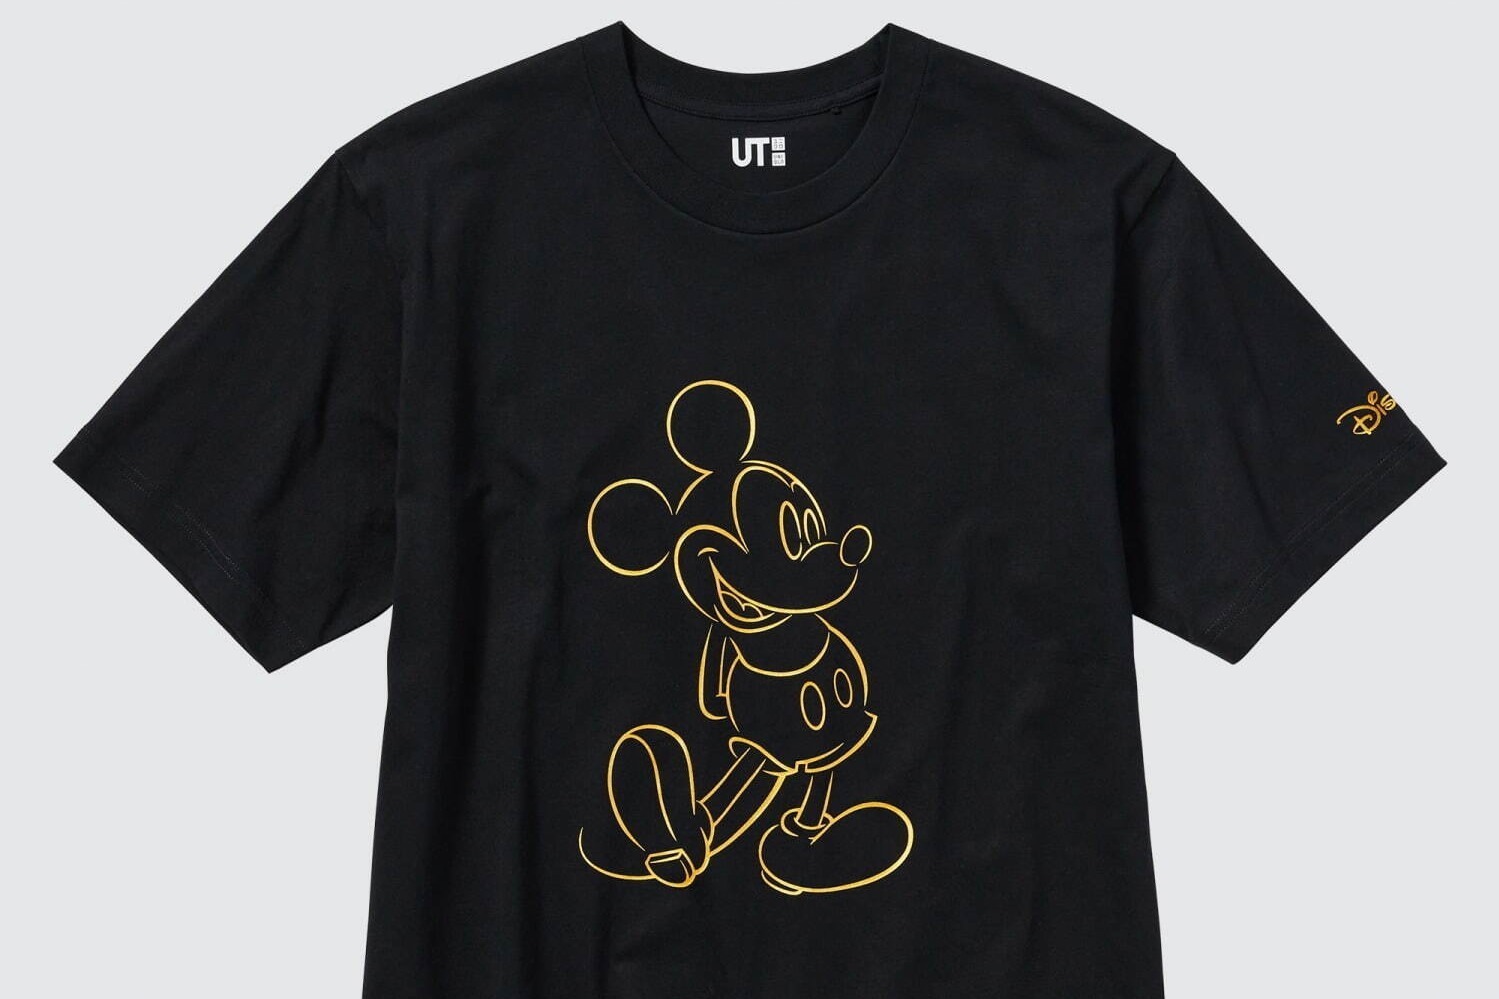 ユニクロ「UT」ディズニー100周年記念、輝くミッキーマウスのプリントT